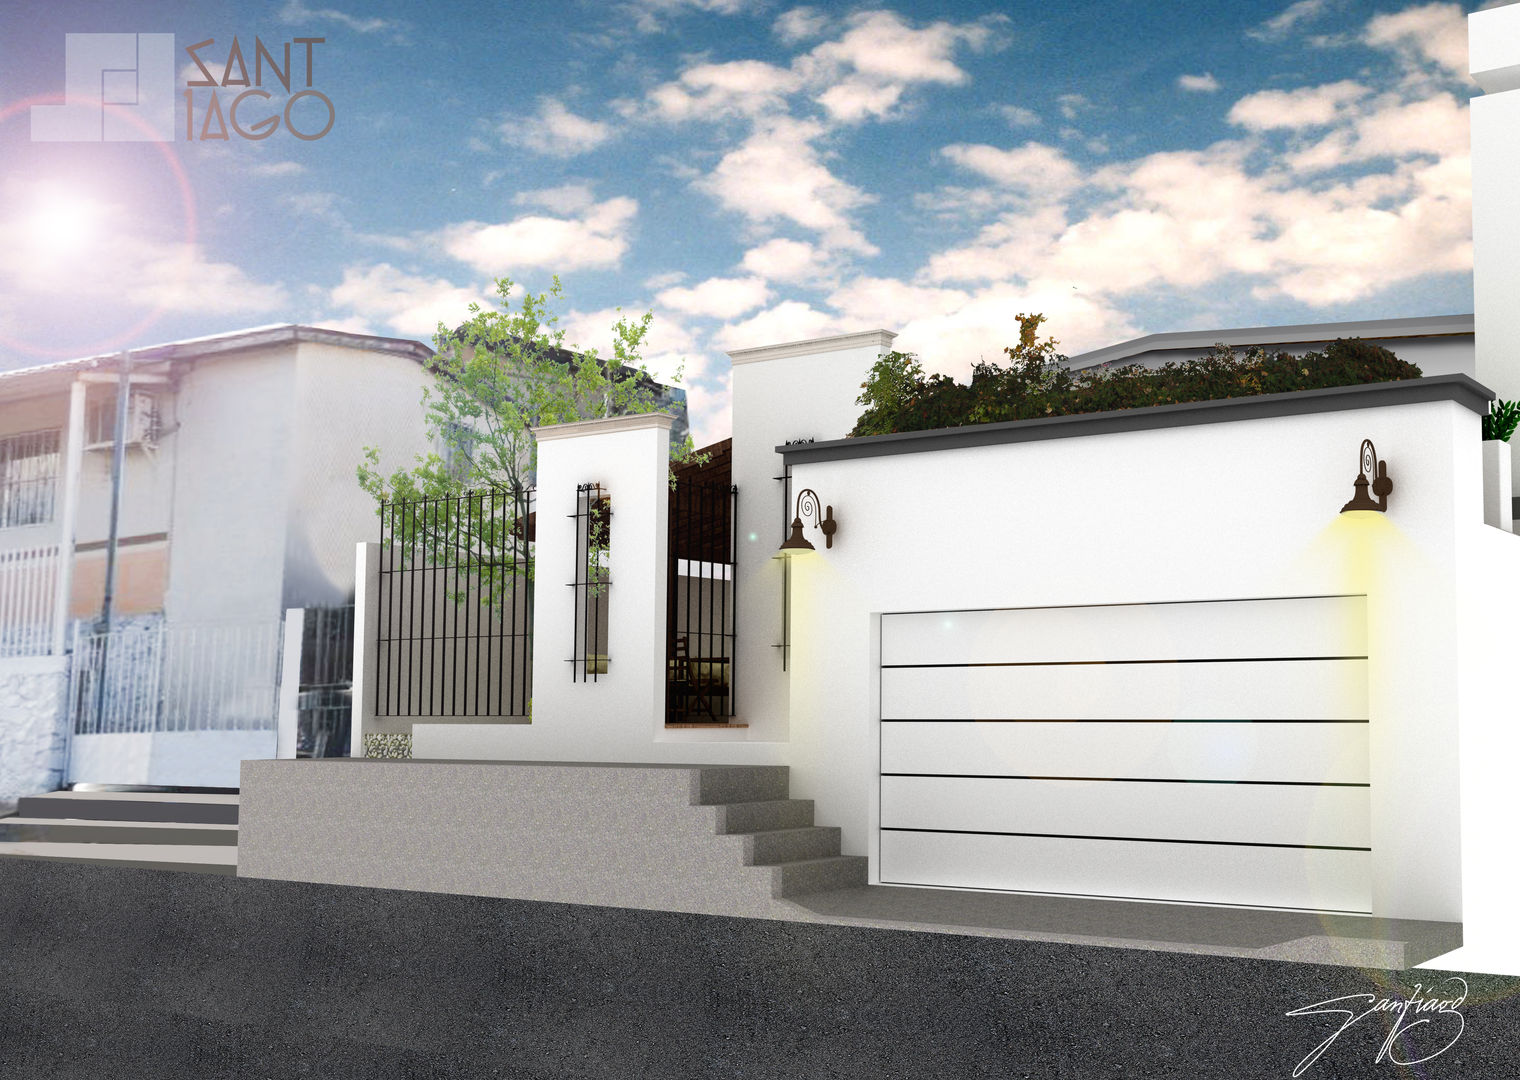 Proyecto RR, SANT1AGO arquitectura y diseño SANT1AGO arquitectura y diseño Minimalist houses Bricks